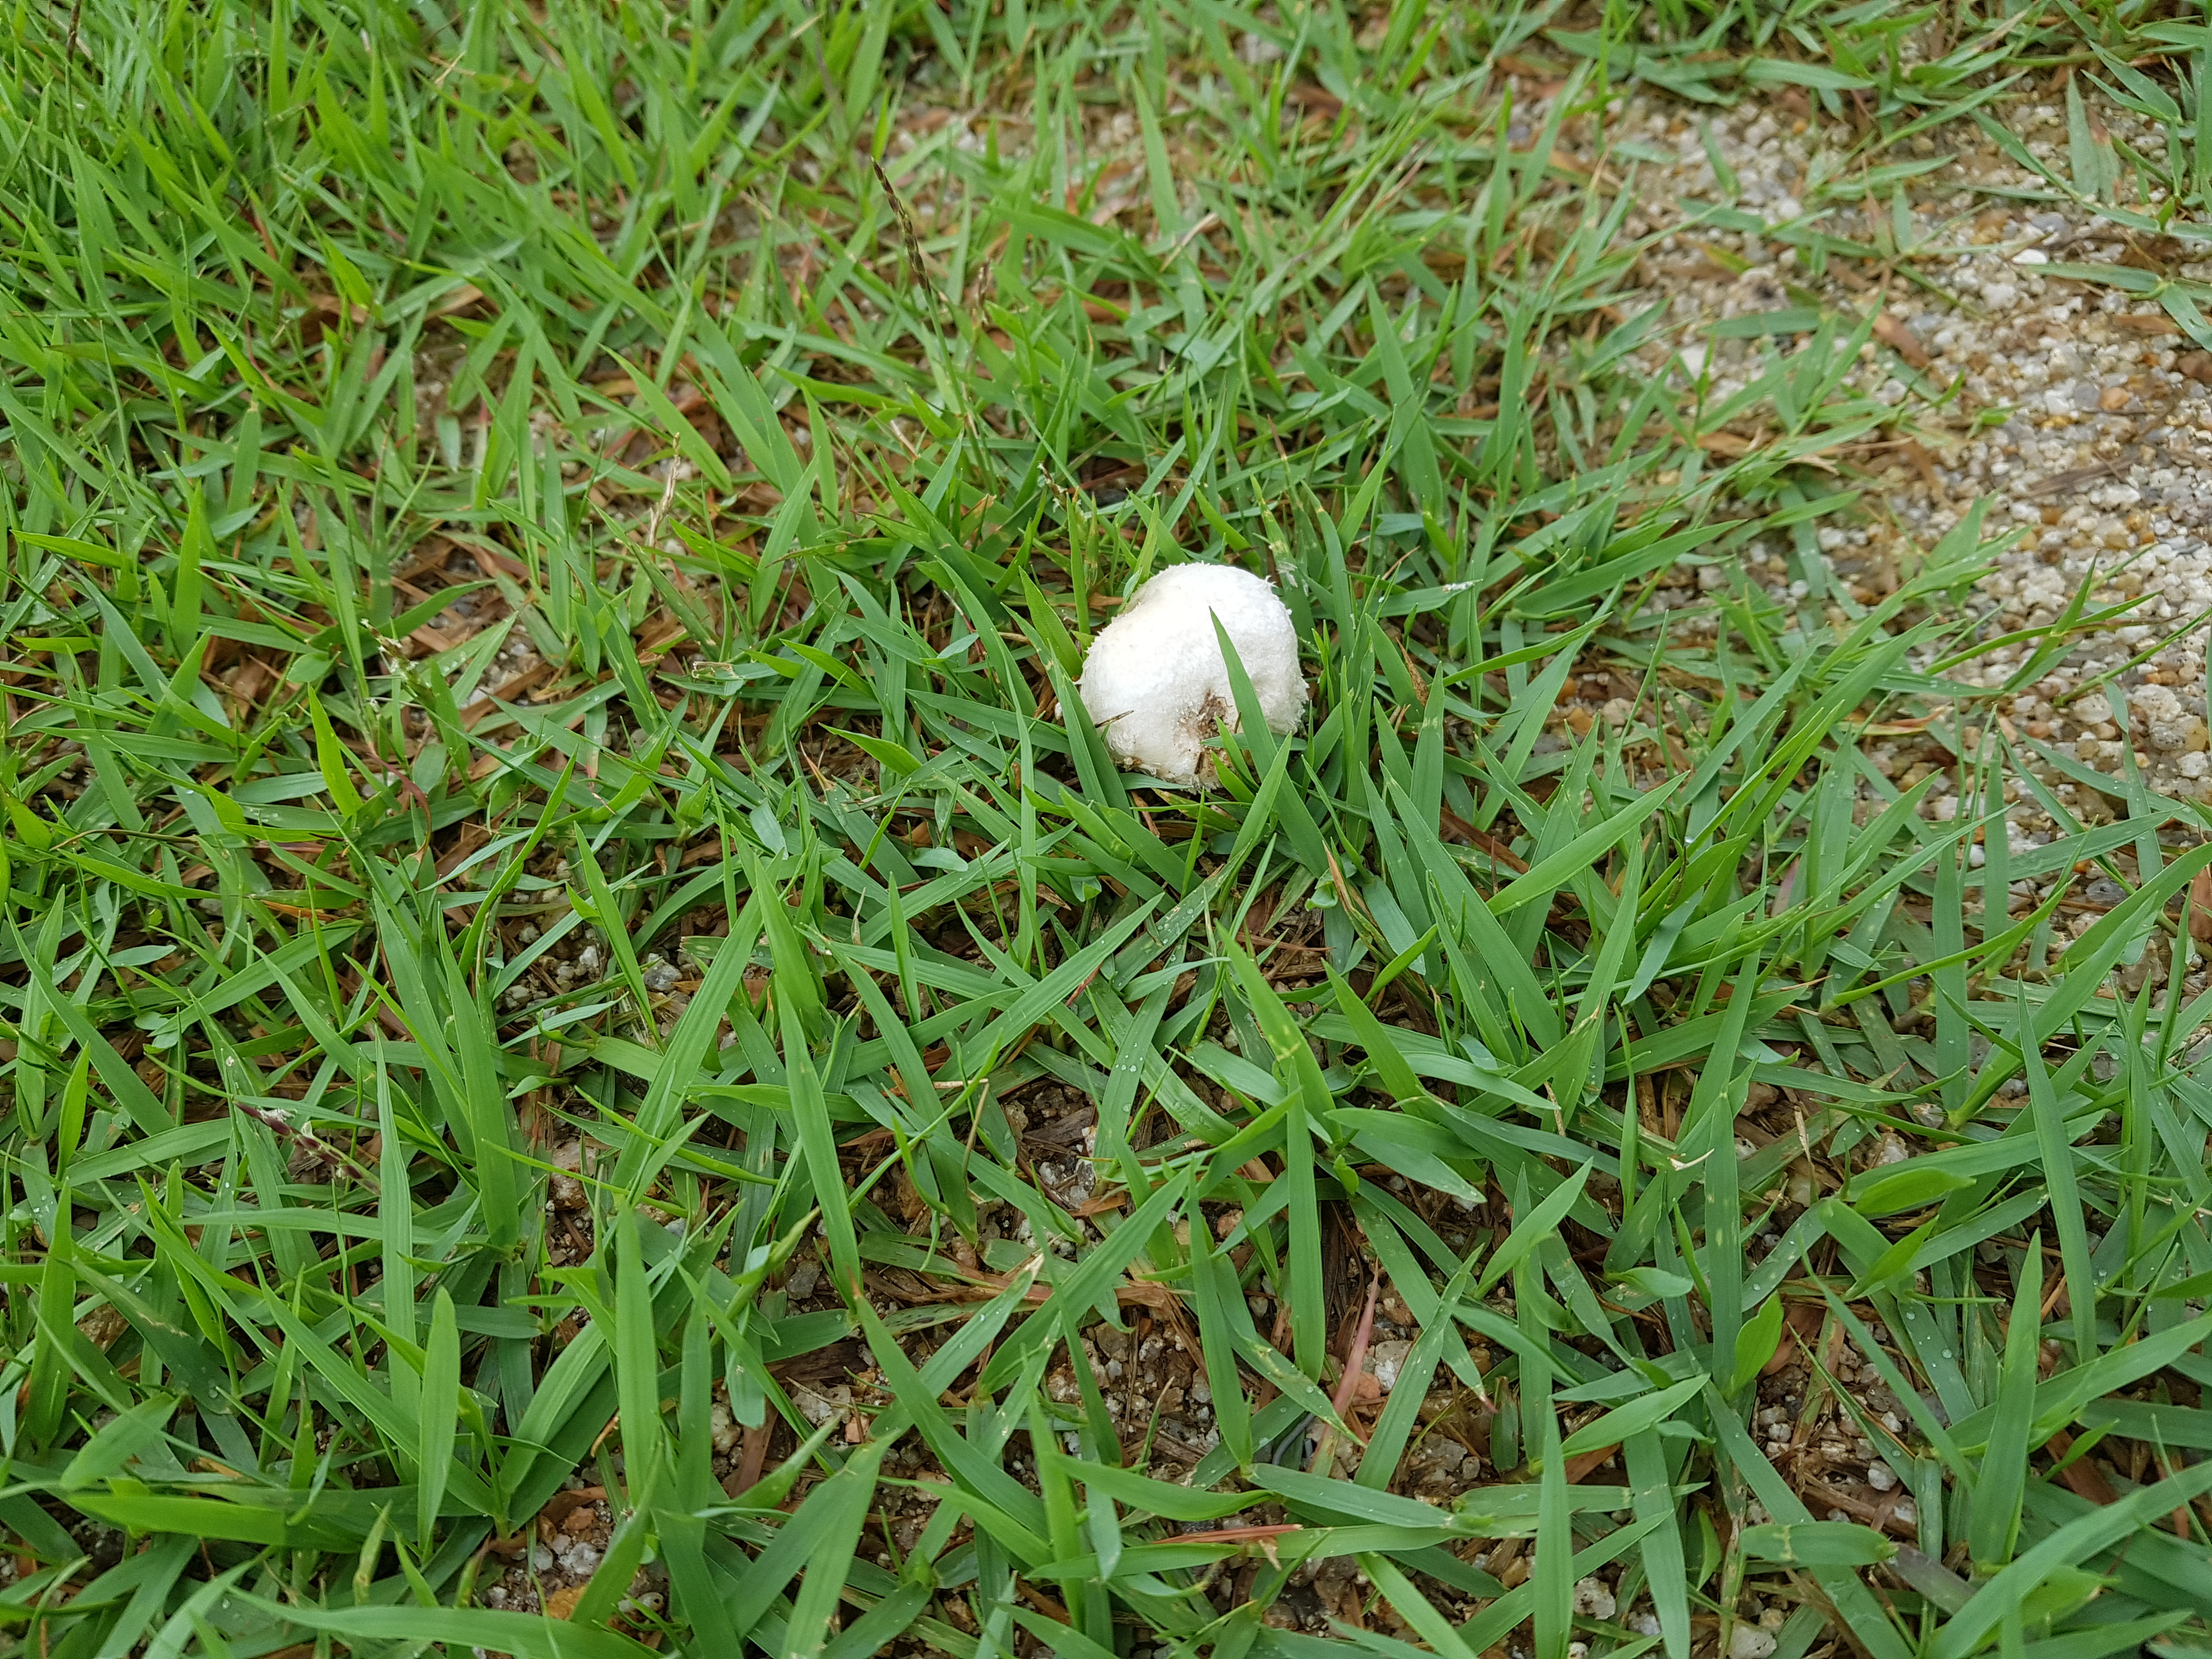 20170703_152829.jpg : 학교 운동장에서 버섯자라요!!!!